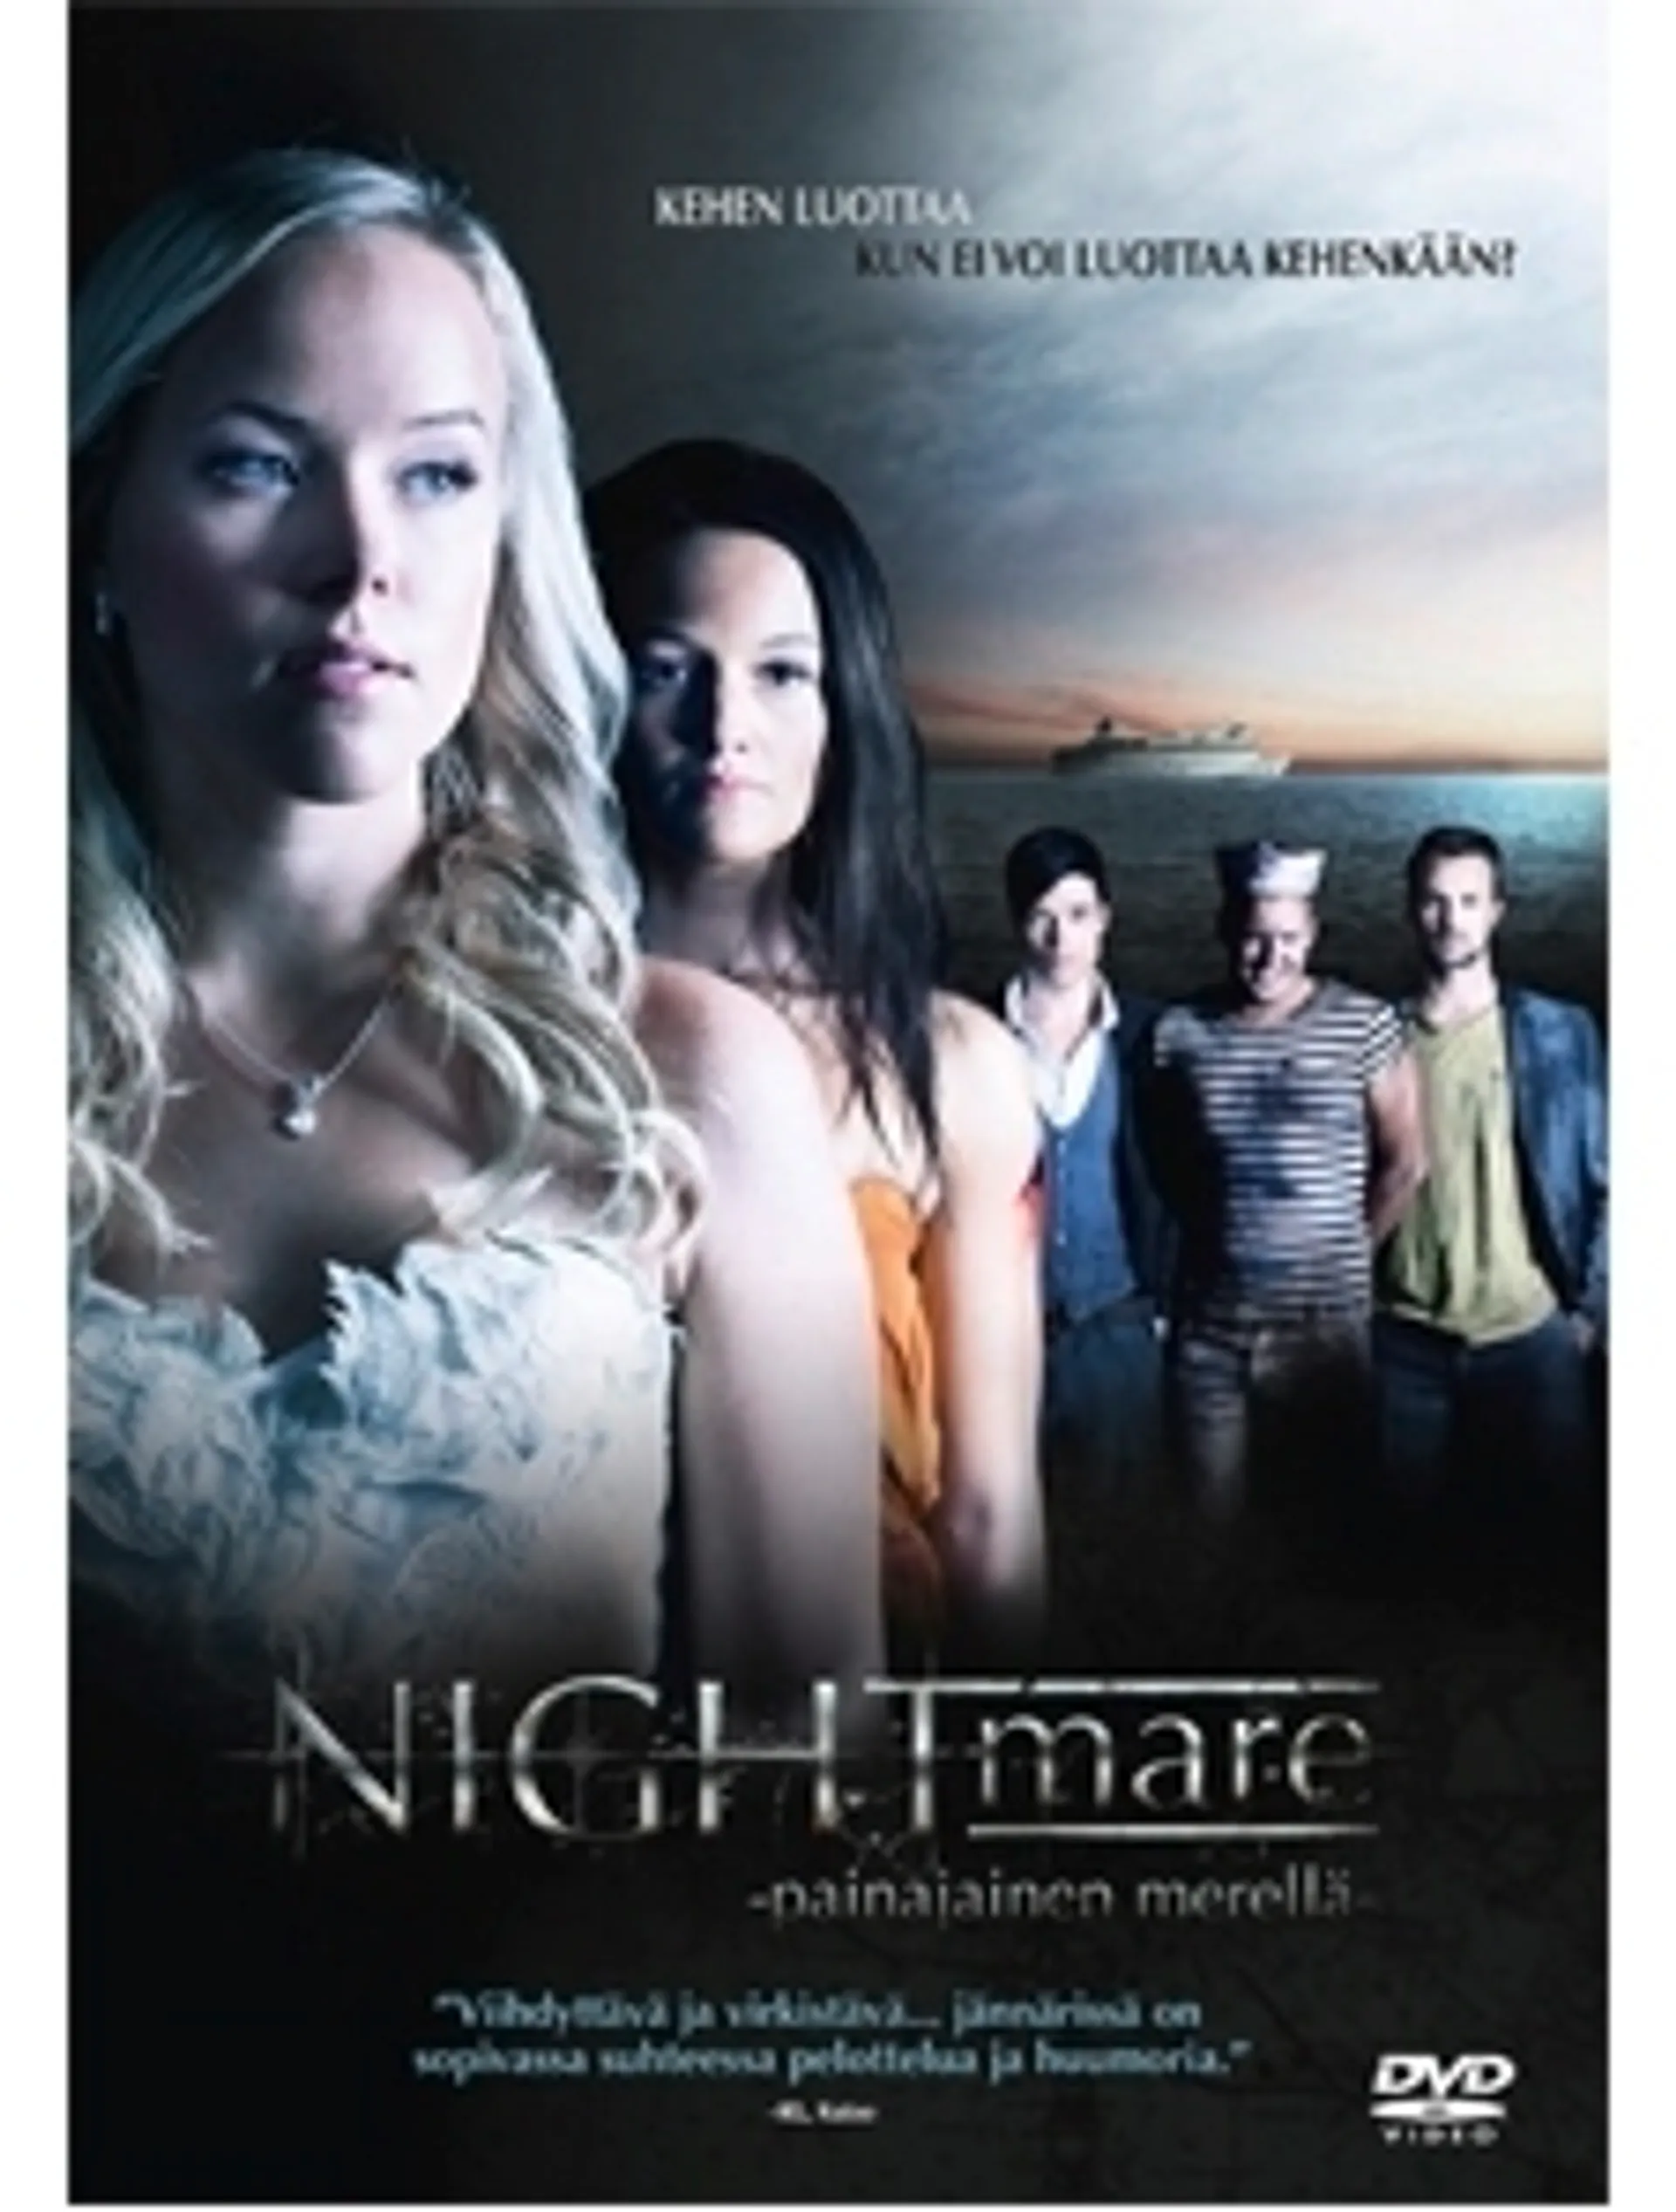 SF Film dvd NIGHTmare - Painajainen merellä